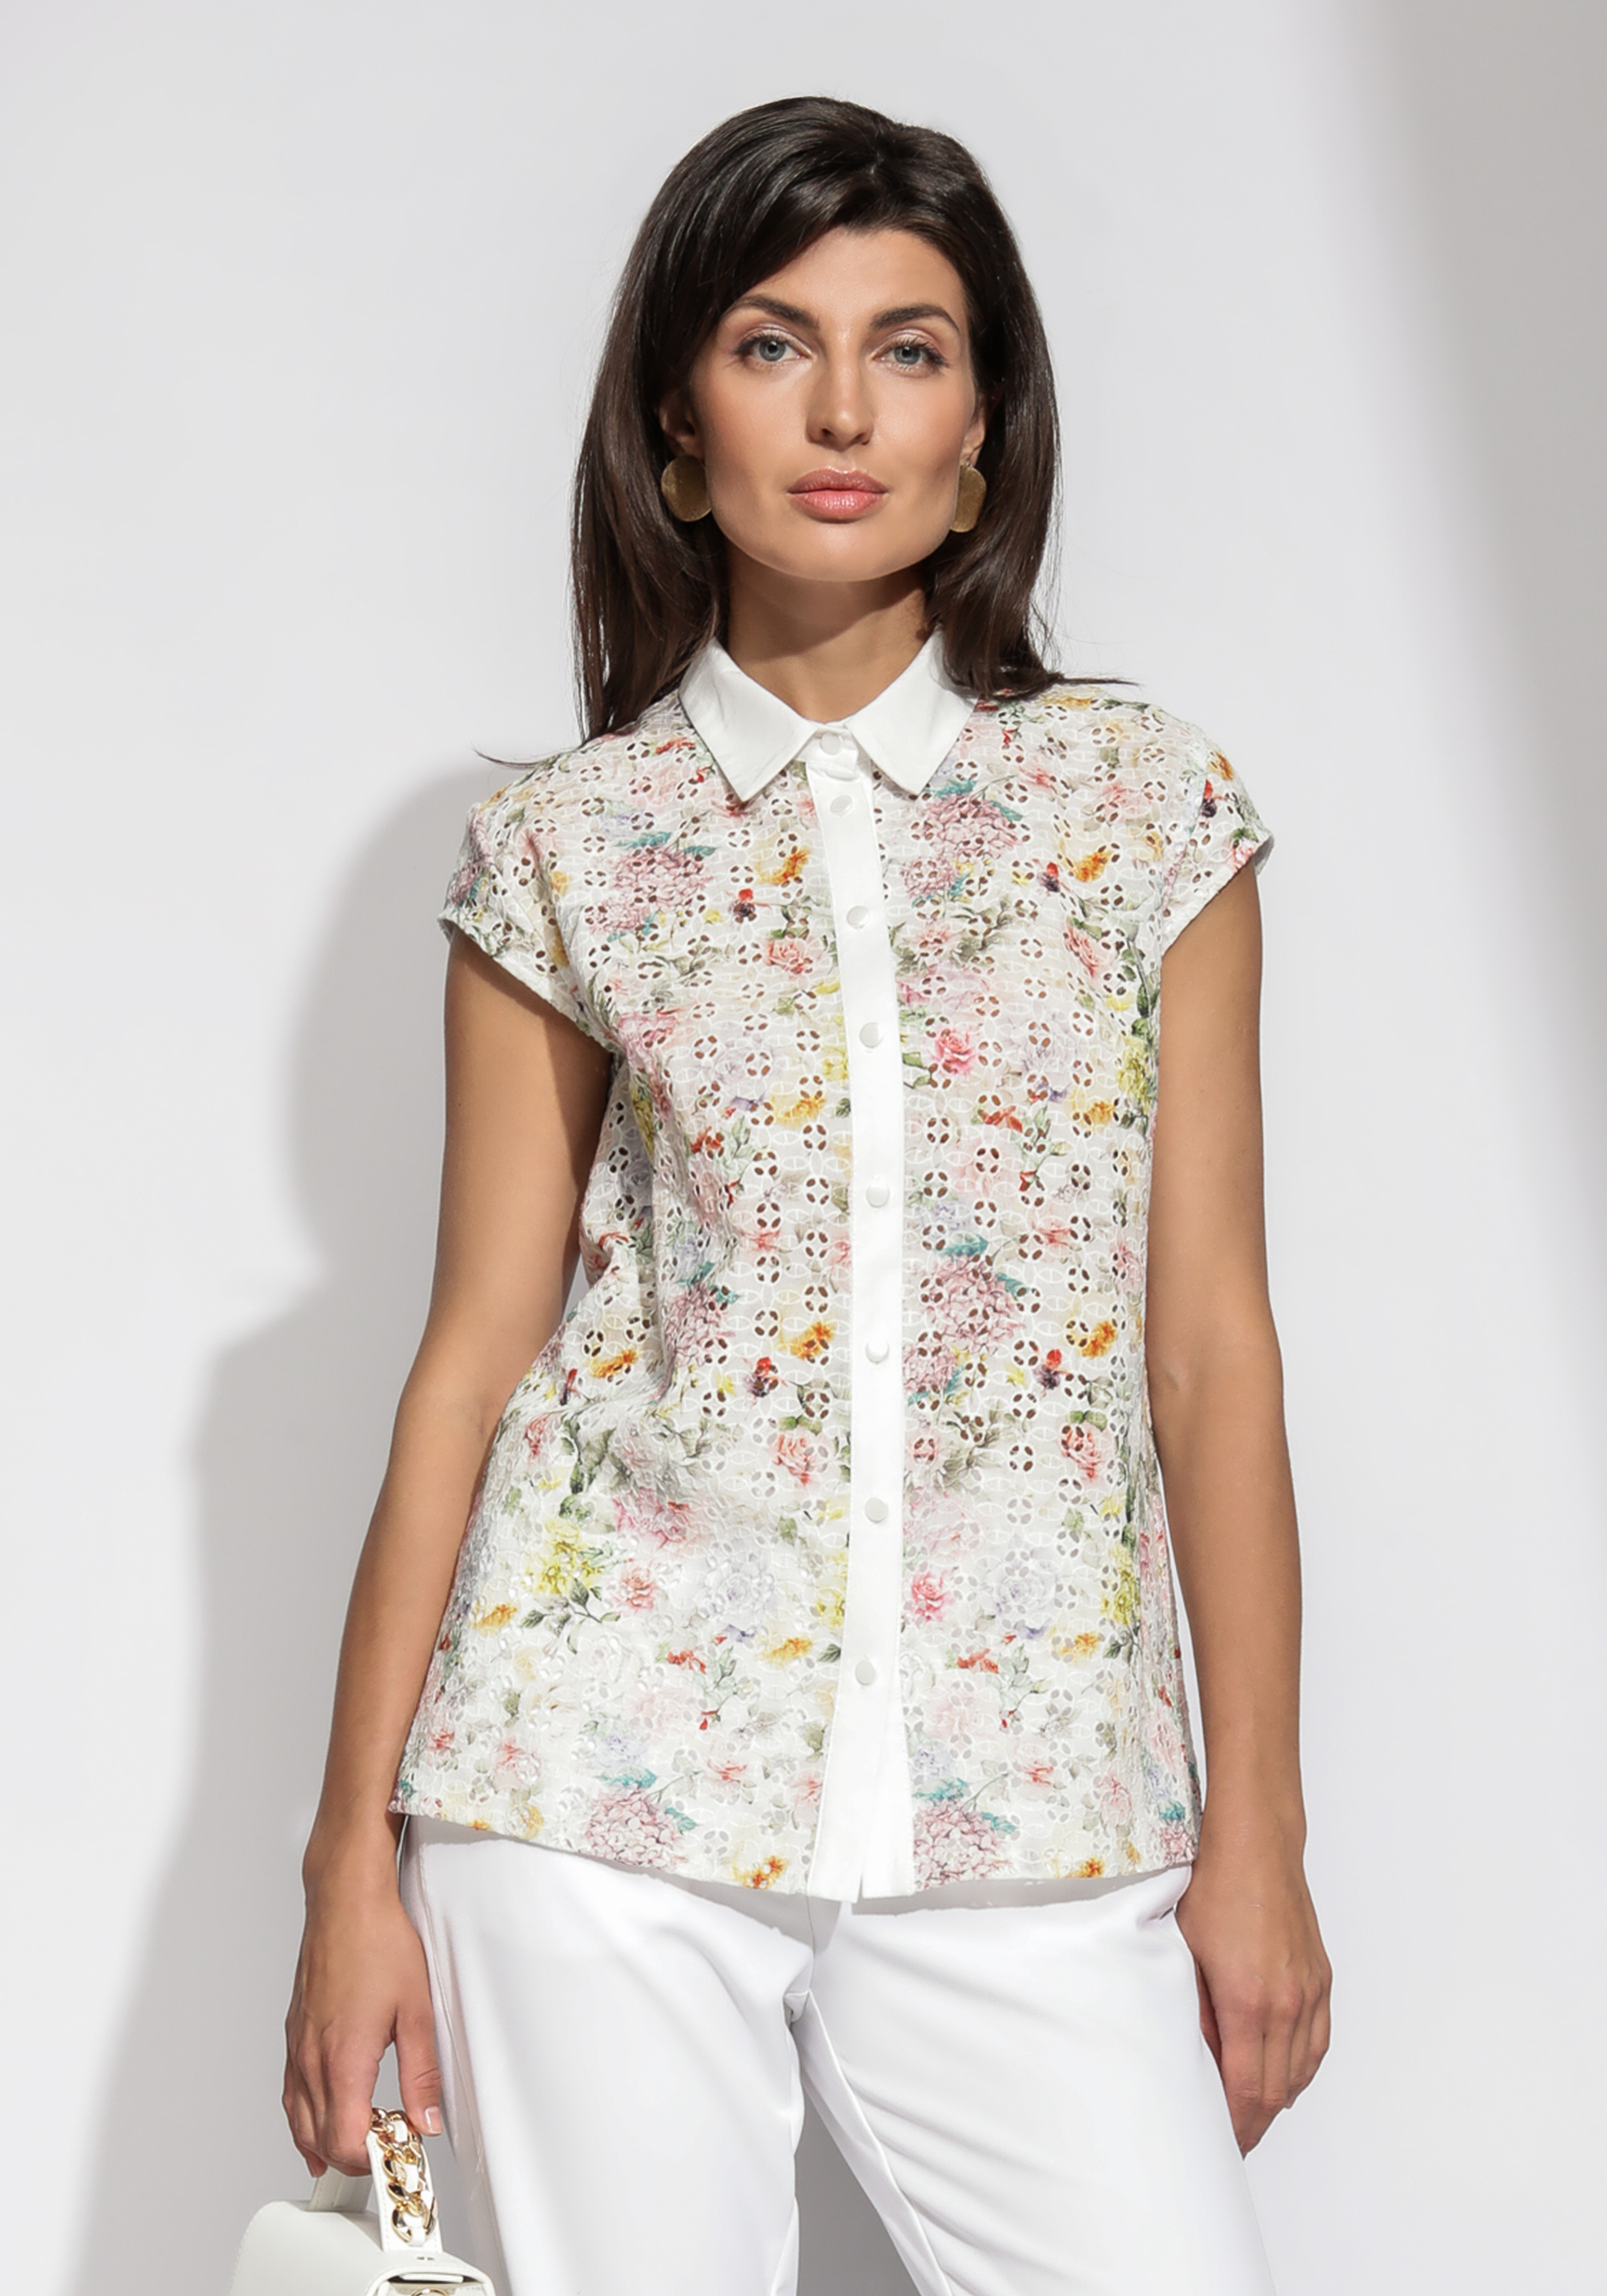 Блузка из шитья с цветочным принтом комплект женский блузка юбка